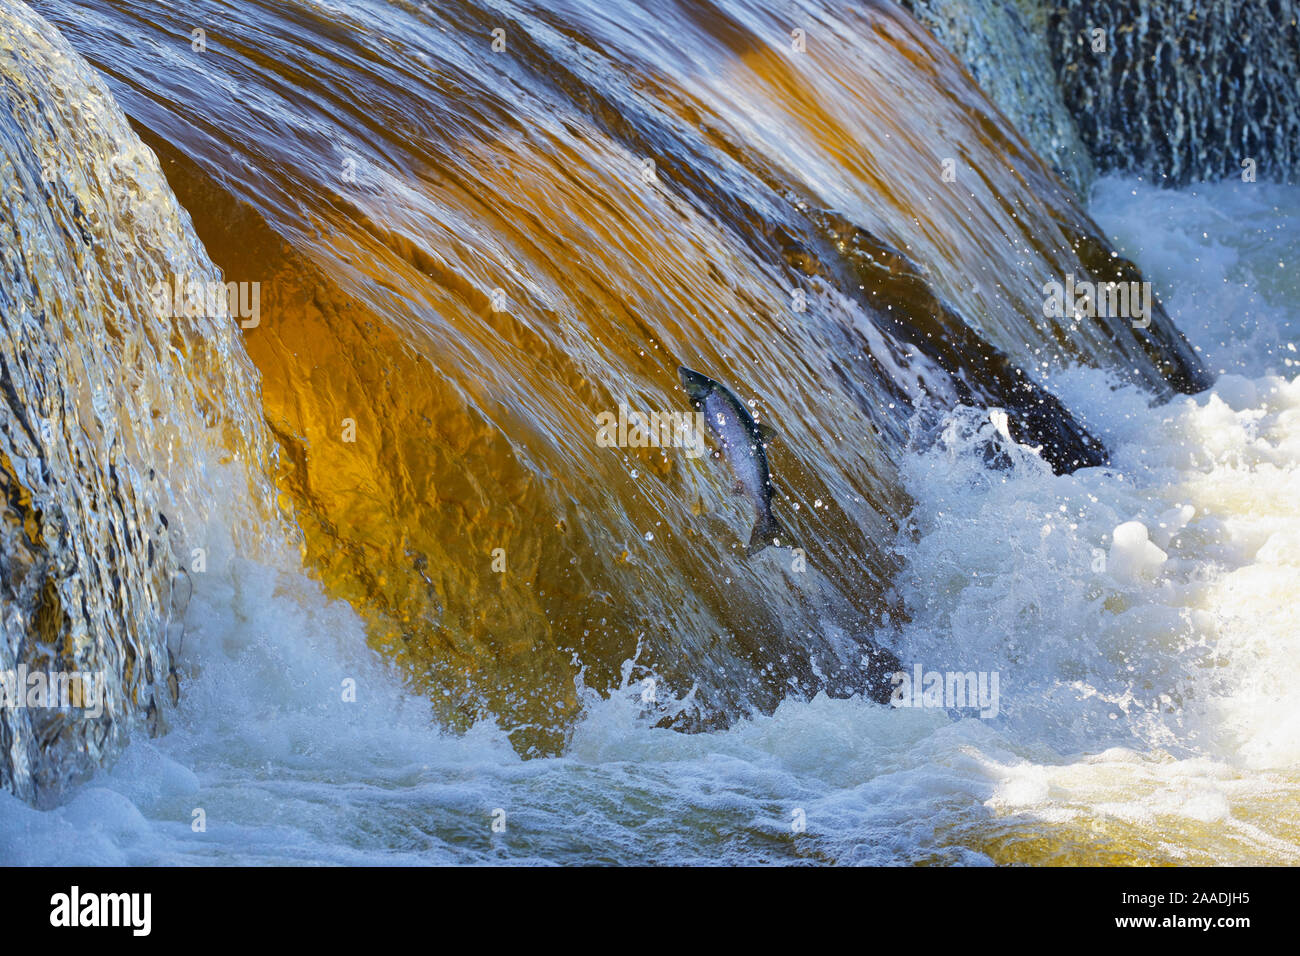 Salmone atlantico (Salmo salar) salto cascata durante la deposizione delle uova la migrazione a monte, Ume River, Svezia. Luglio. Fotografato per il progetto di acqua dolce. Foto Stock